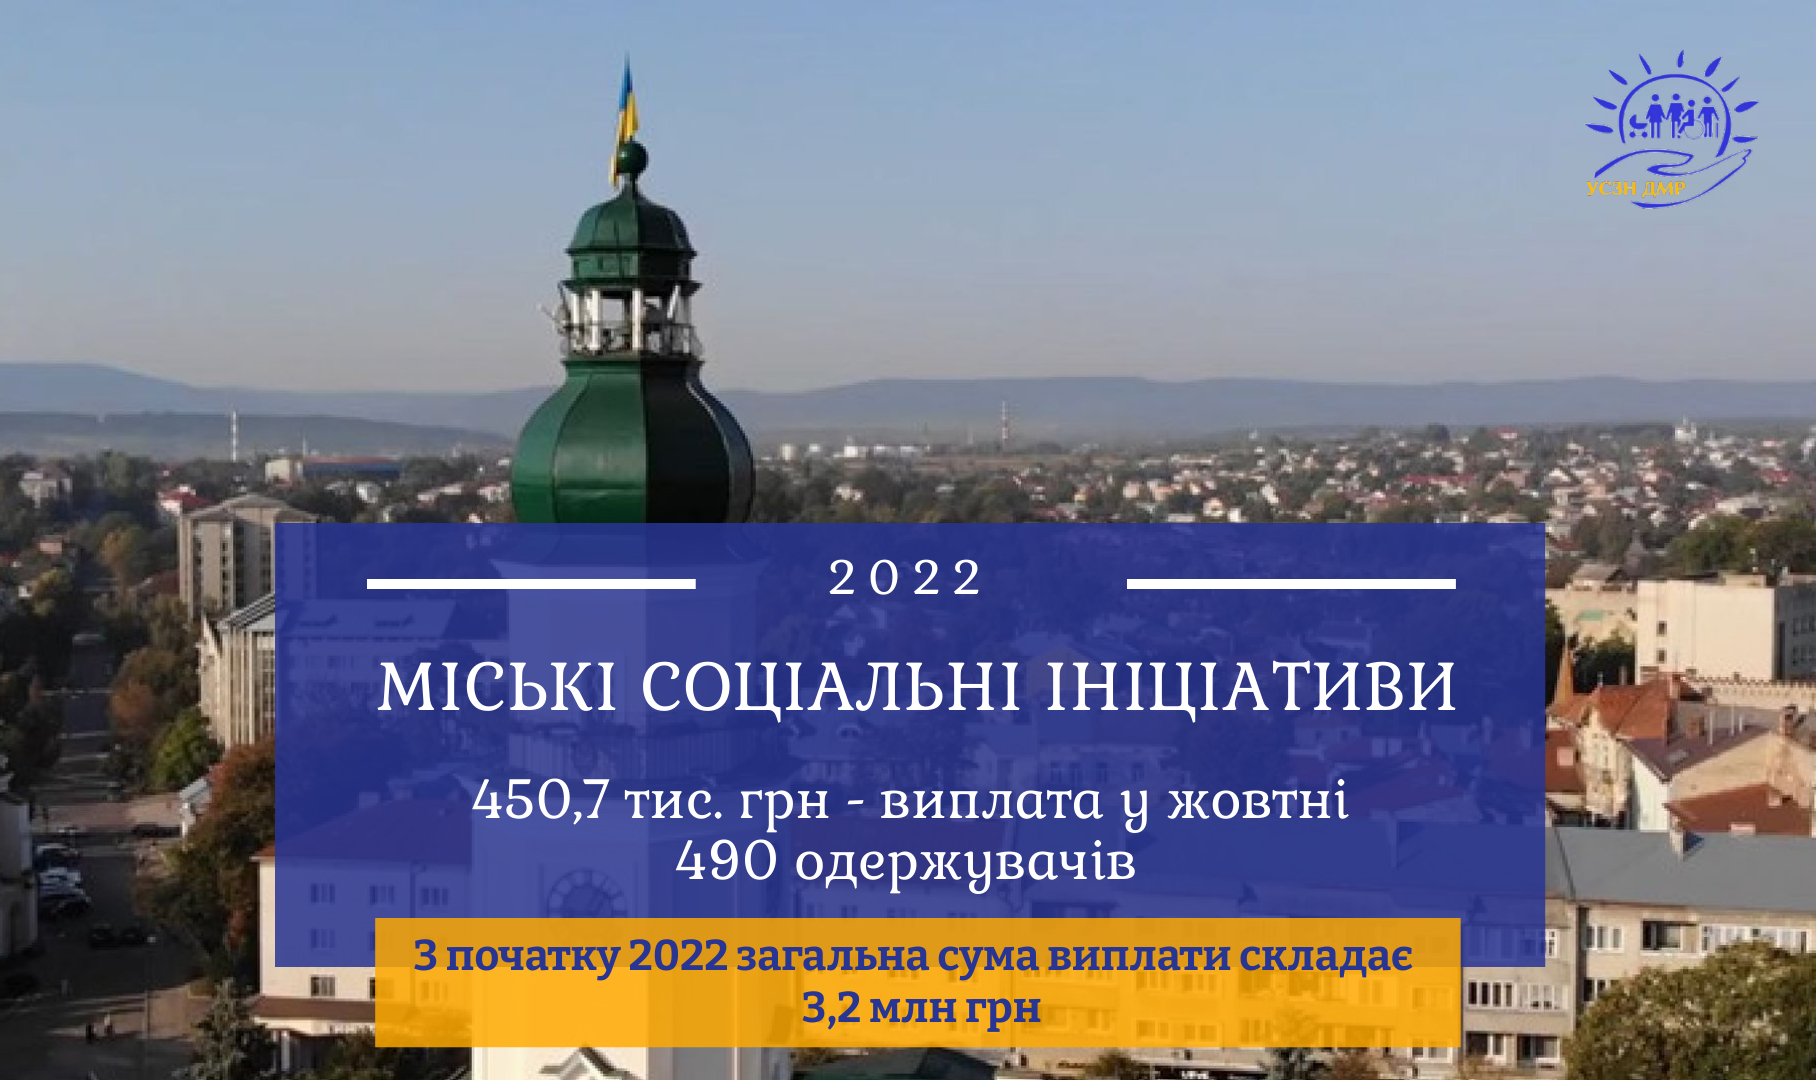 Міські соціальні ініціативи: 450,7 тис. грн перераховано для 490 мешканців Дрогобицької громади у жовтні 2022р